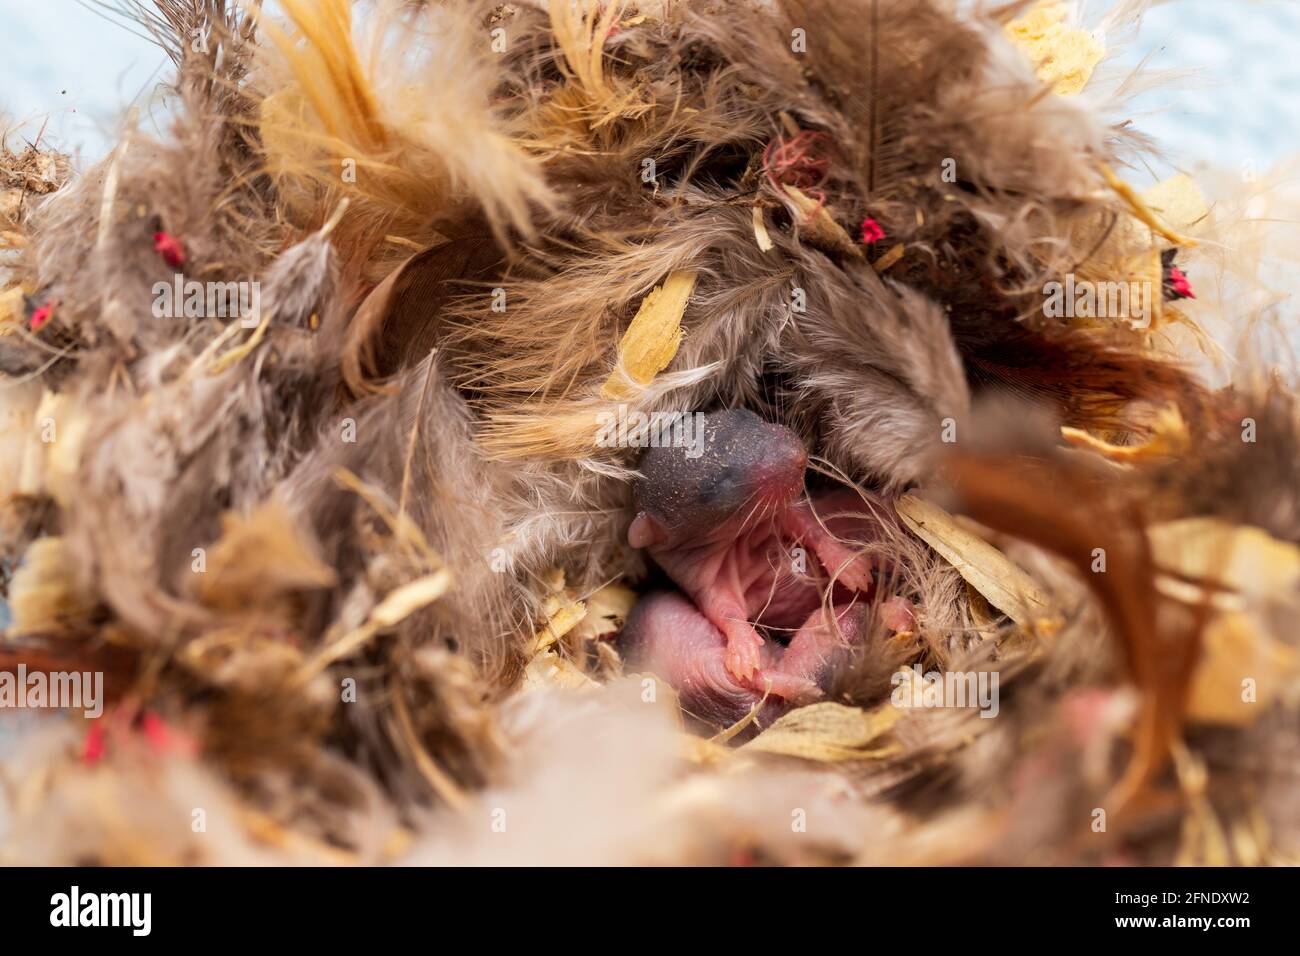 Ratón joven, Mus musculus, en nido de plumas y otros materiales. Foto de stock